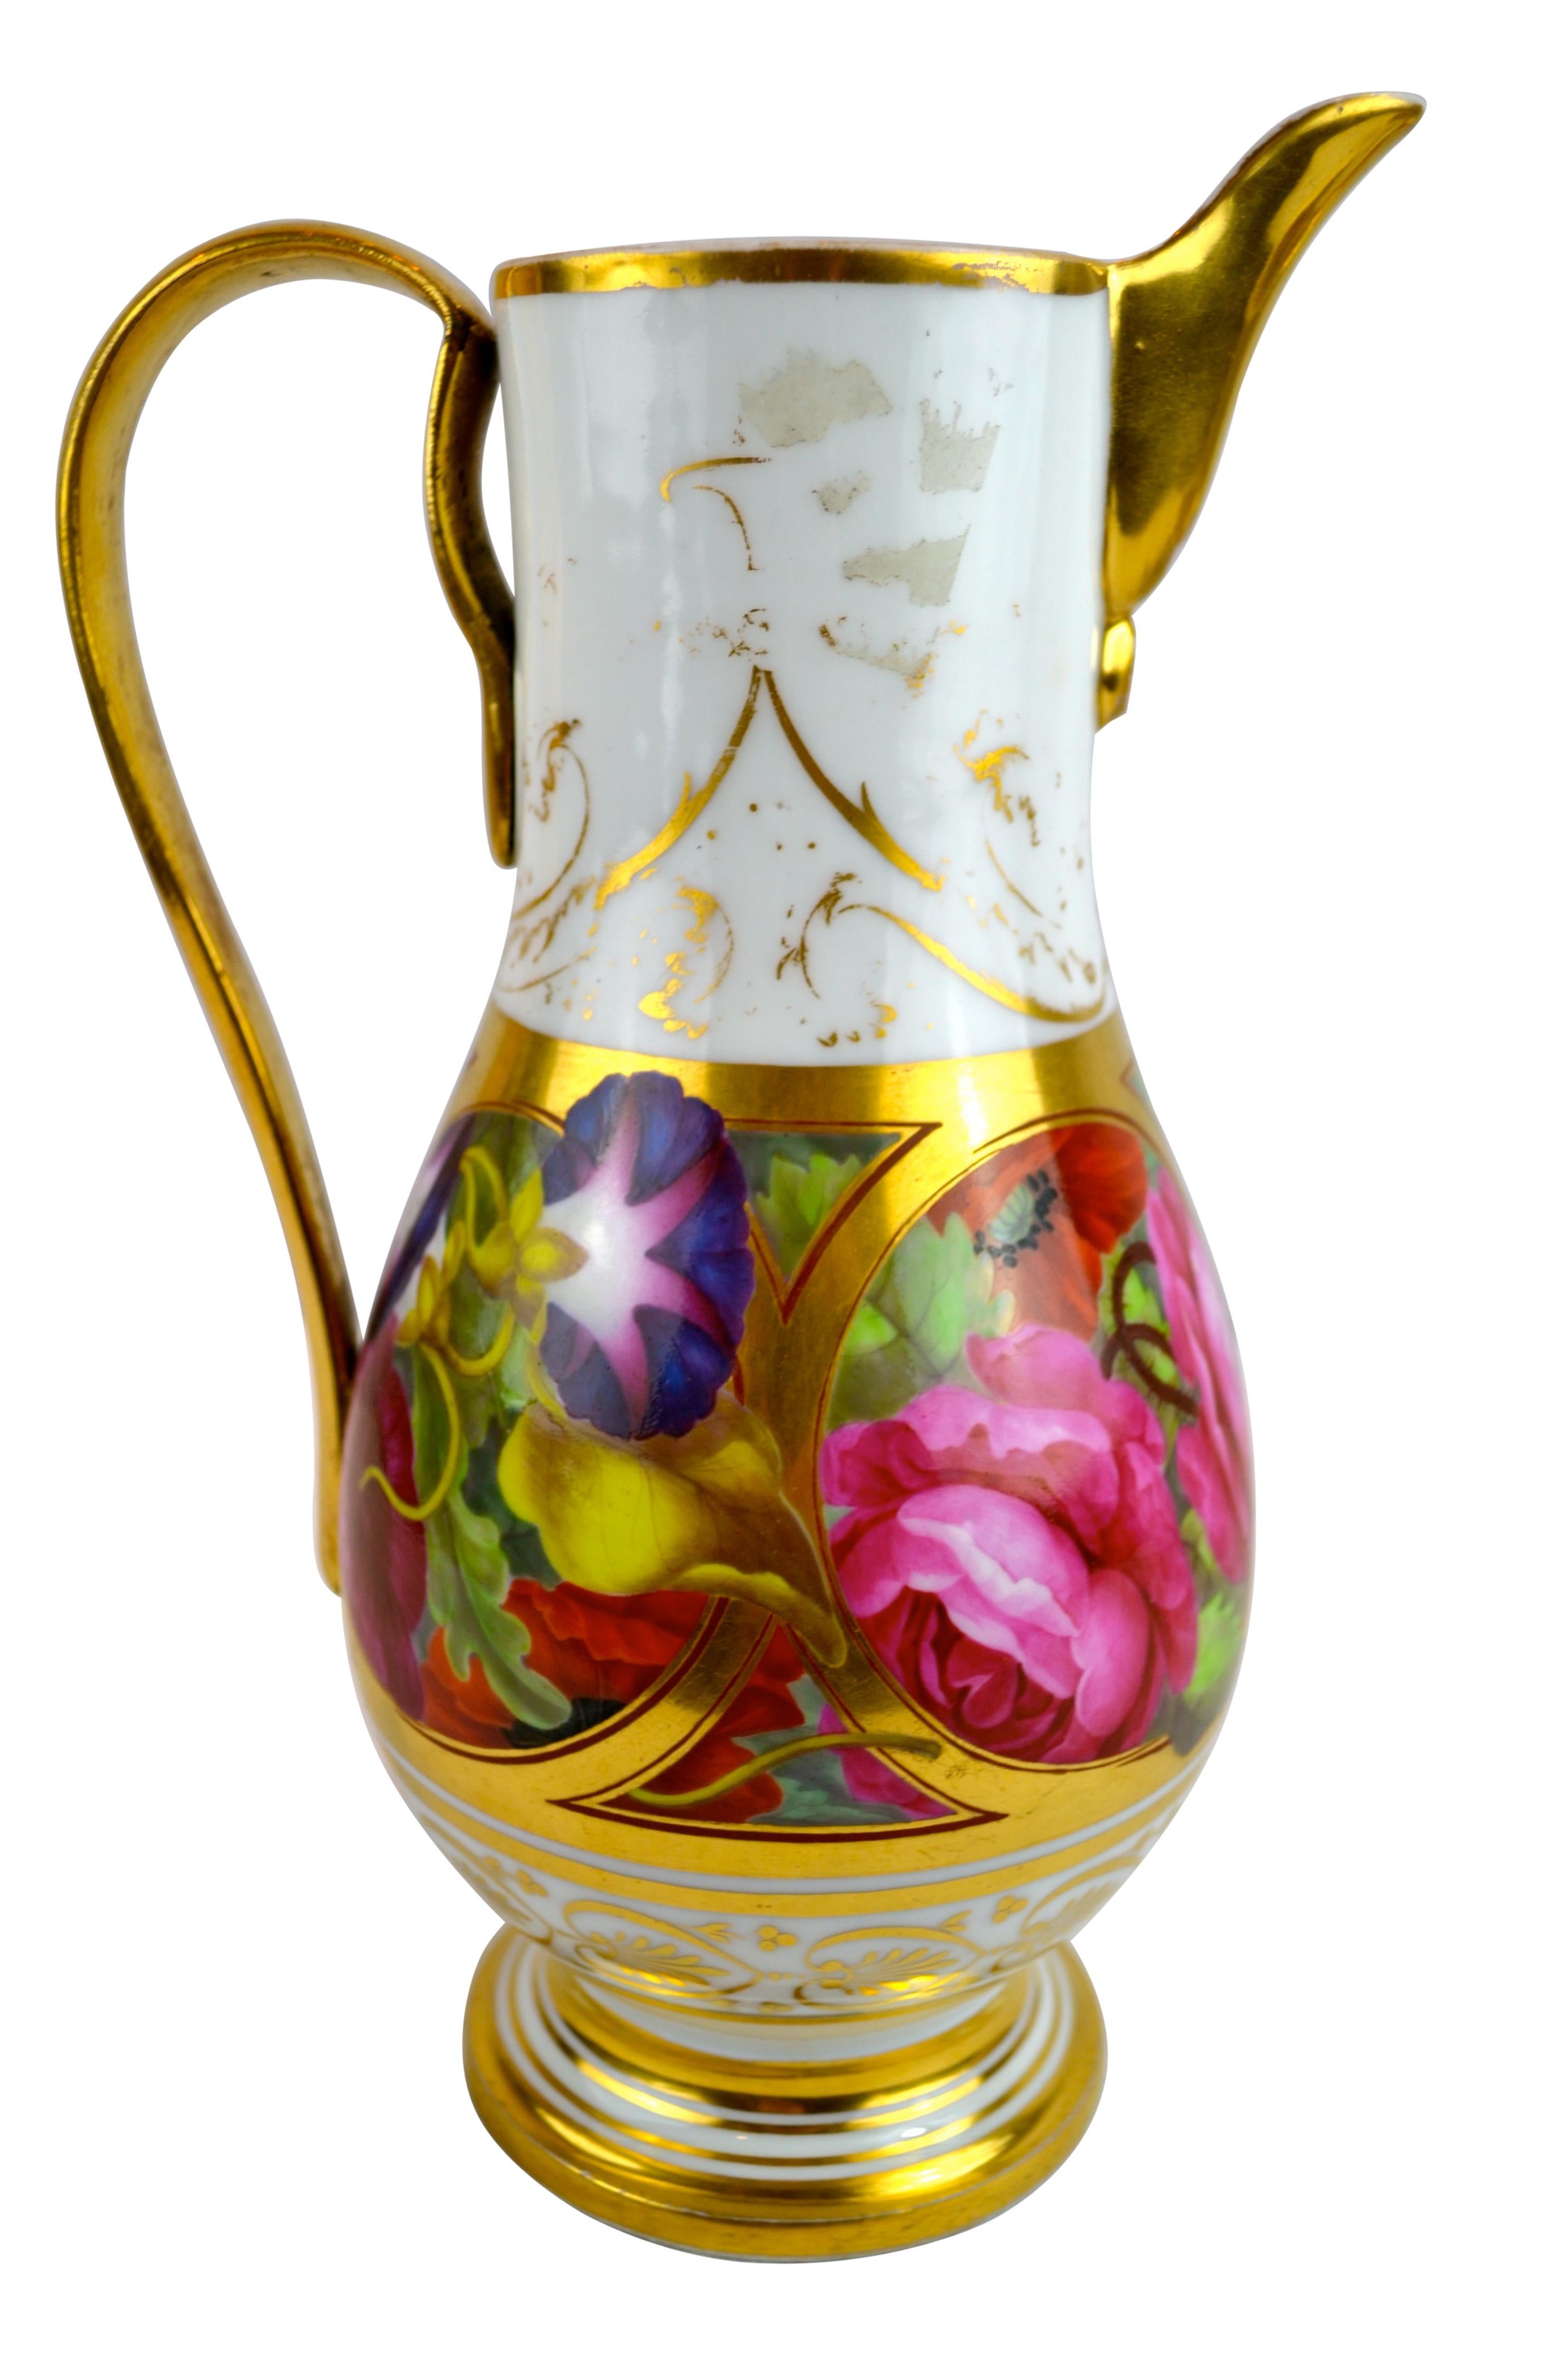 Empire Paris Porcelain Floral Ewer and Basin For Sale